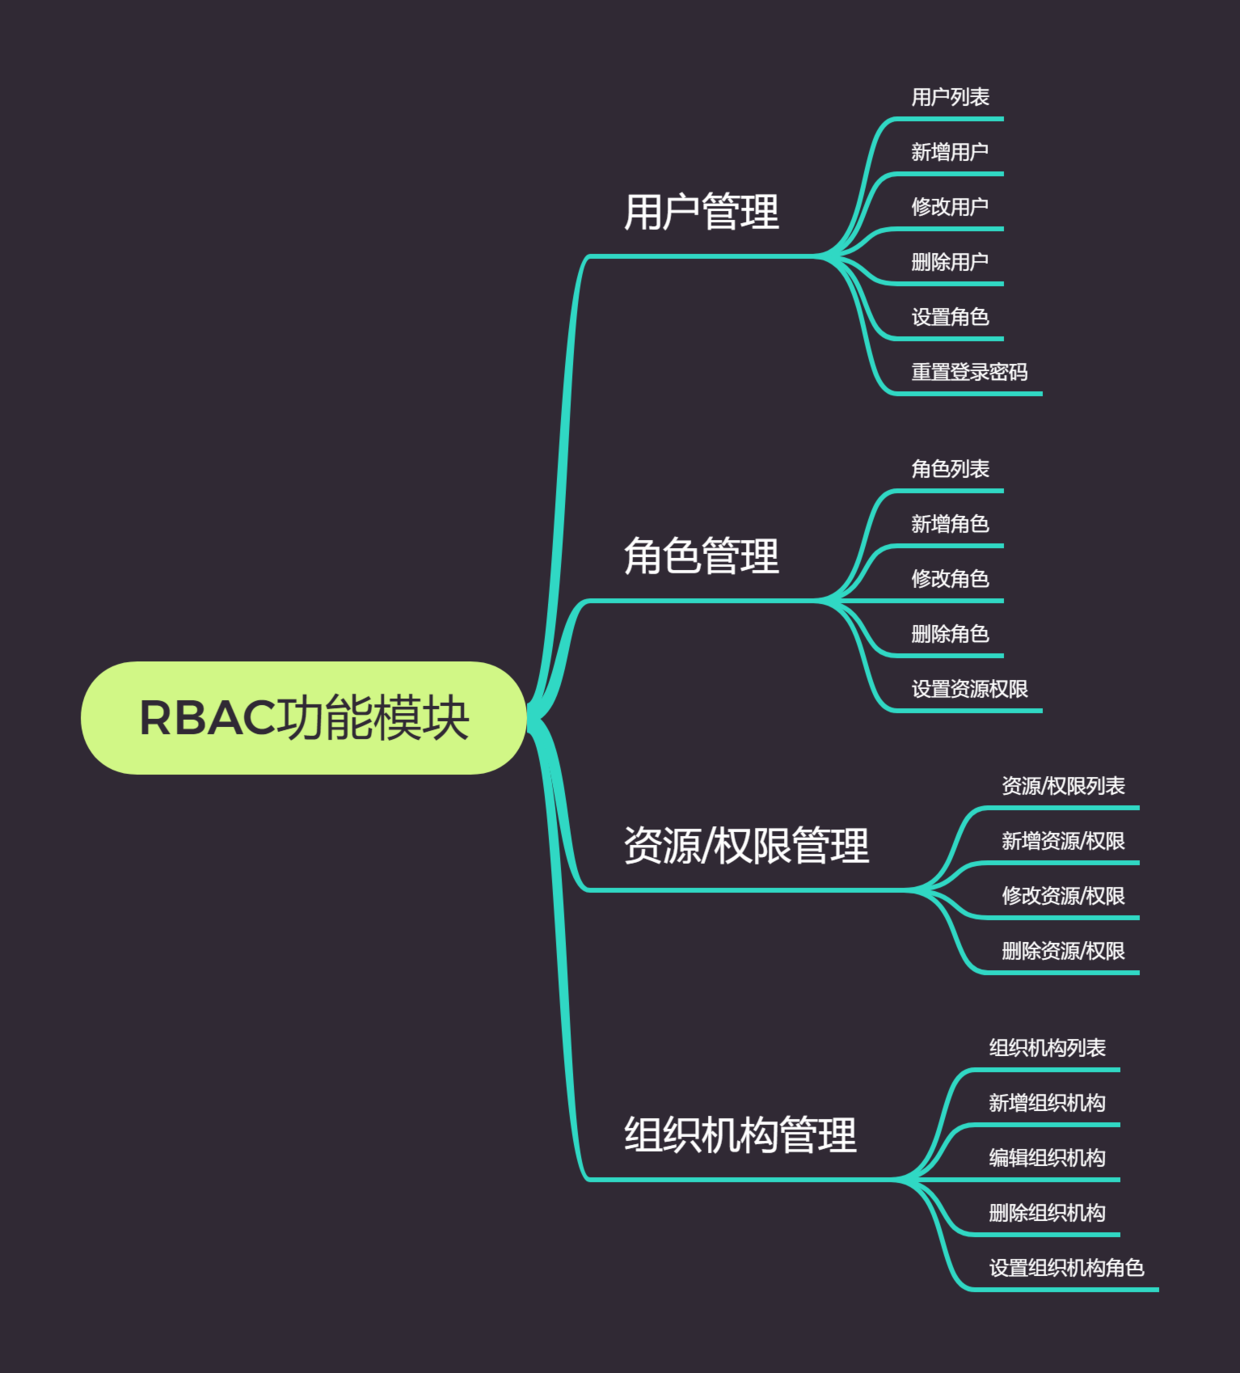 RBAC功能模块